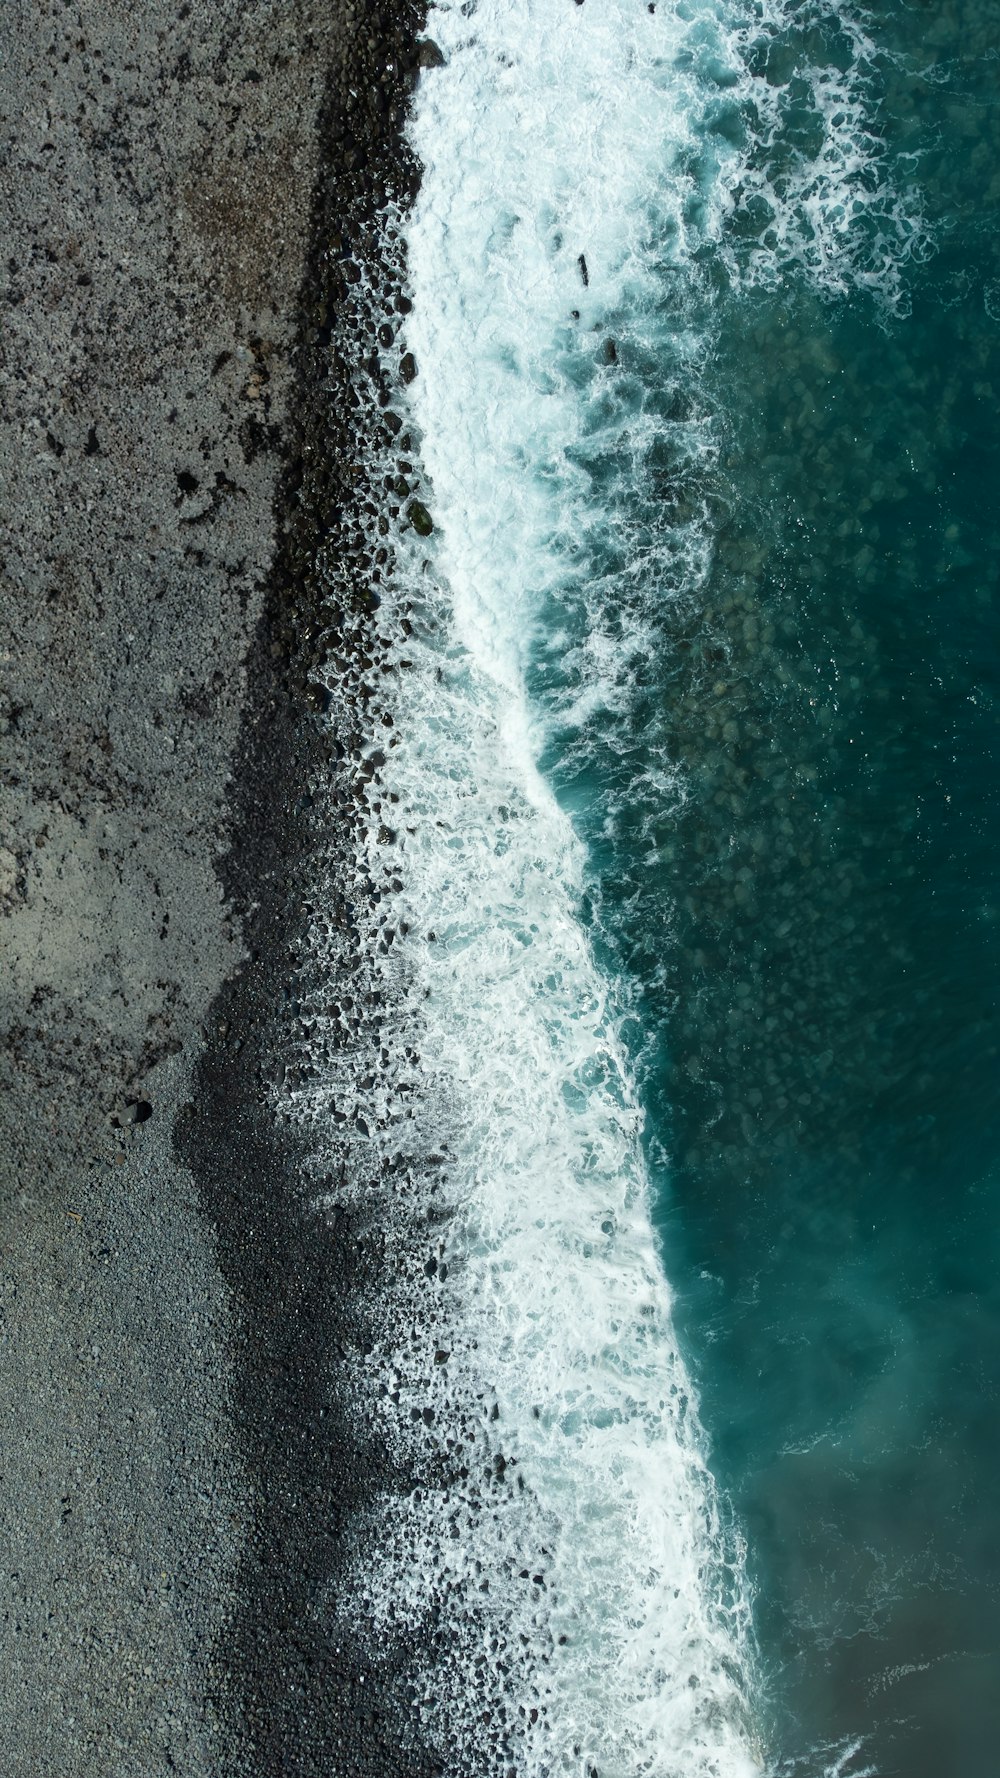 une vue aérienne d’une plage avec une vague qui arrive